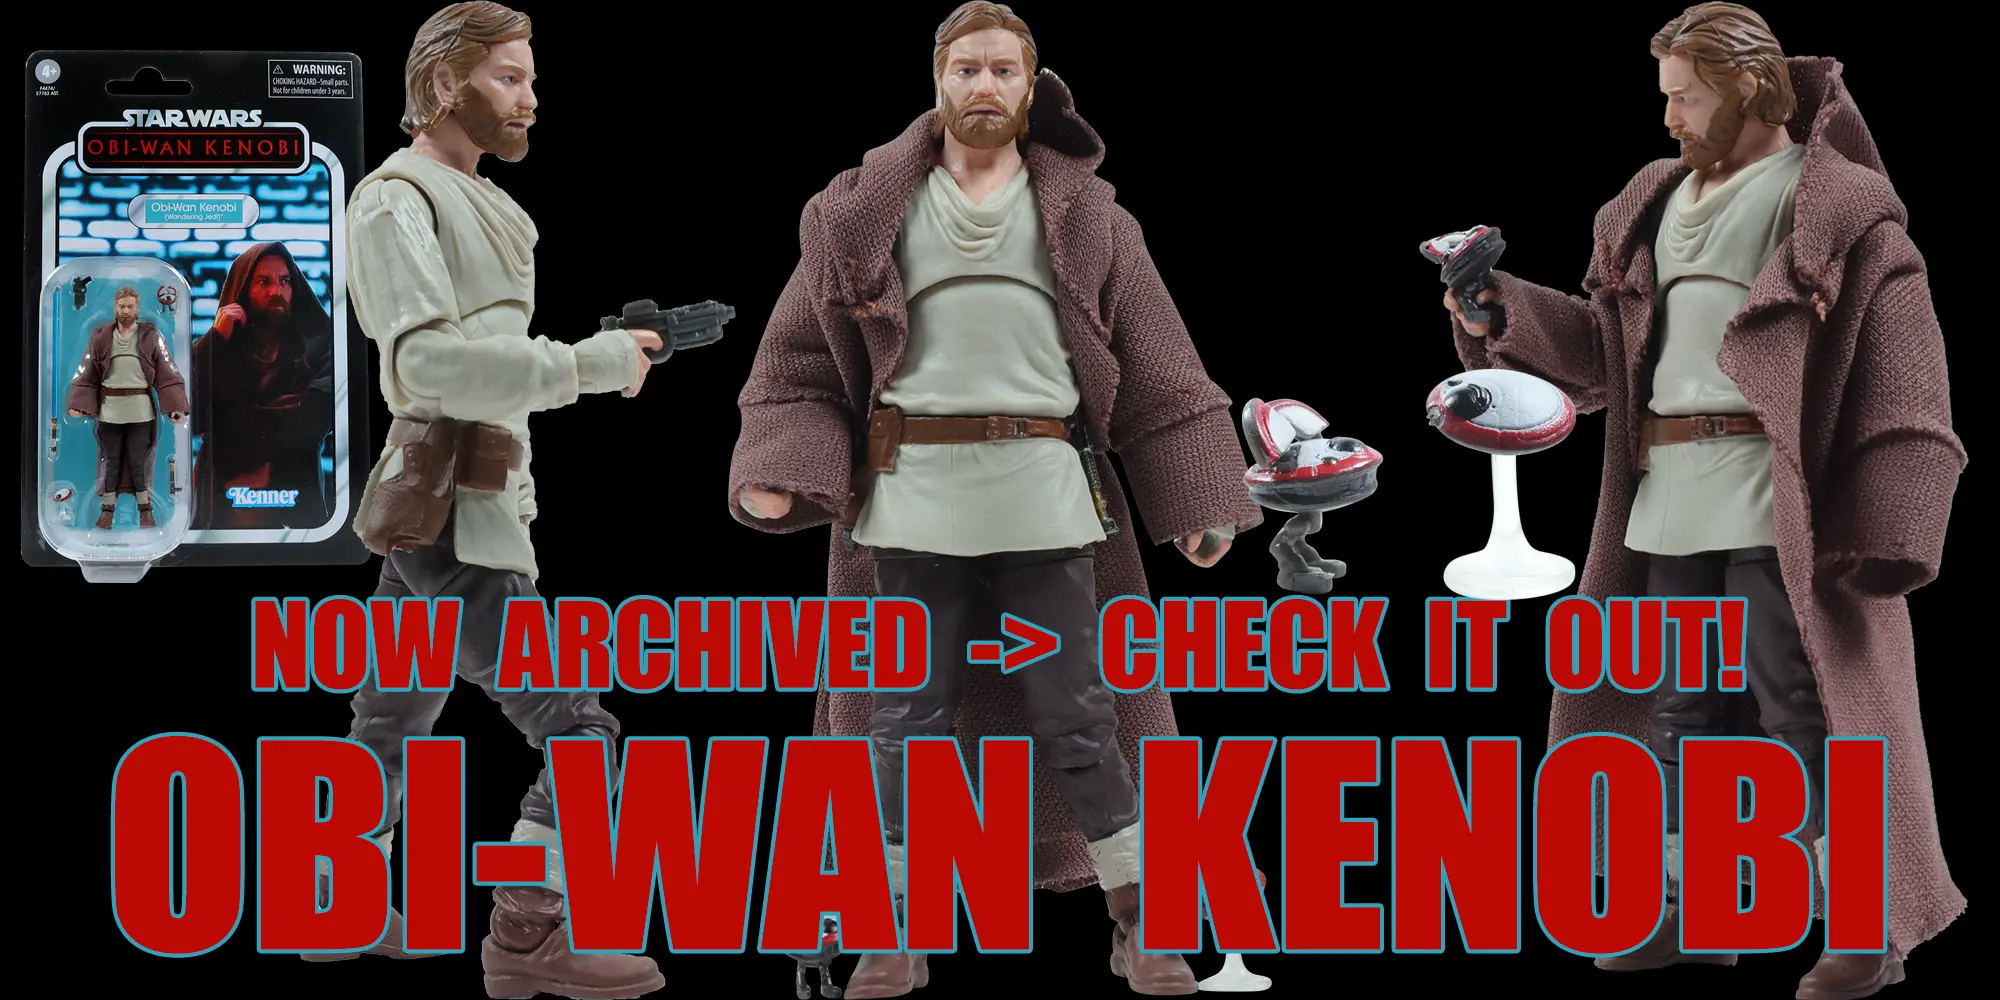 Obi Wan Kenobi Wandering Jedi